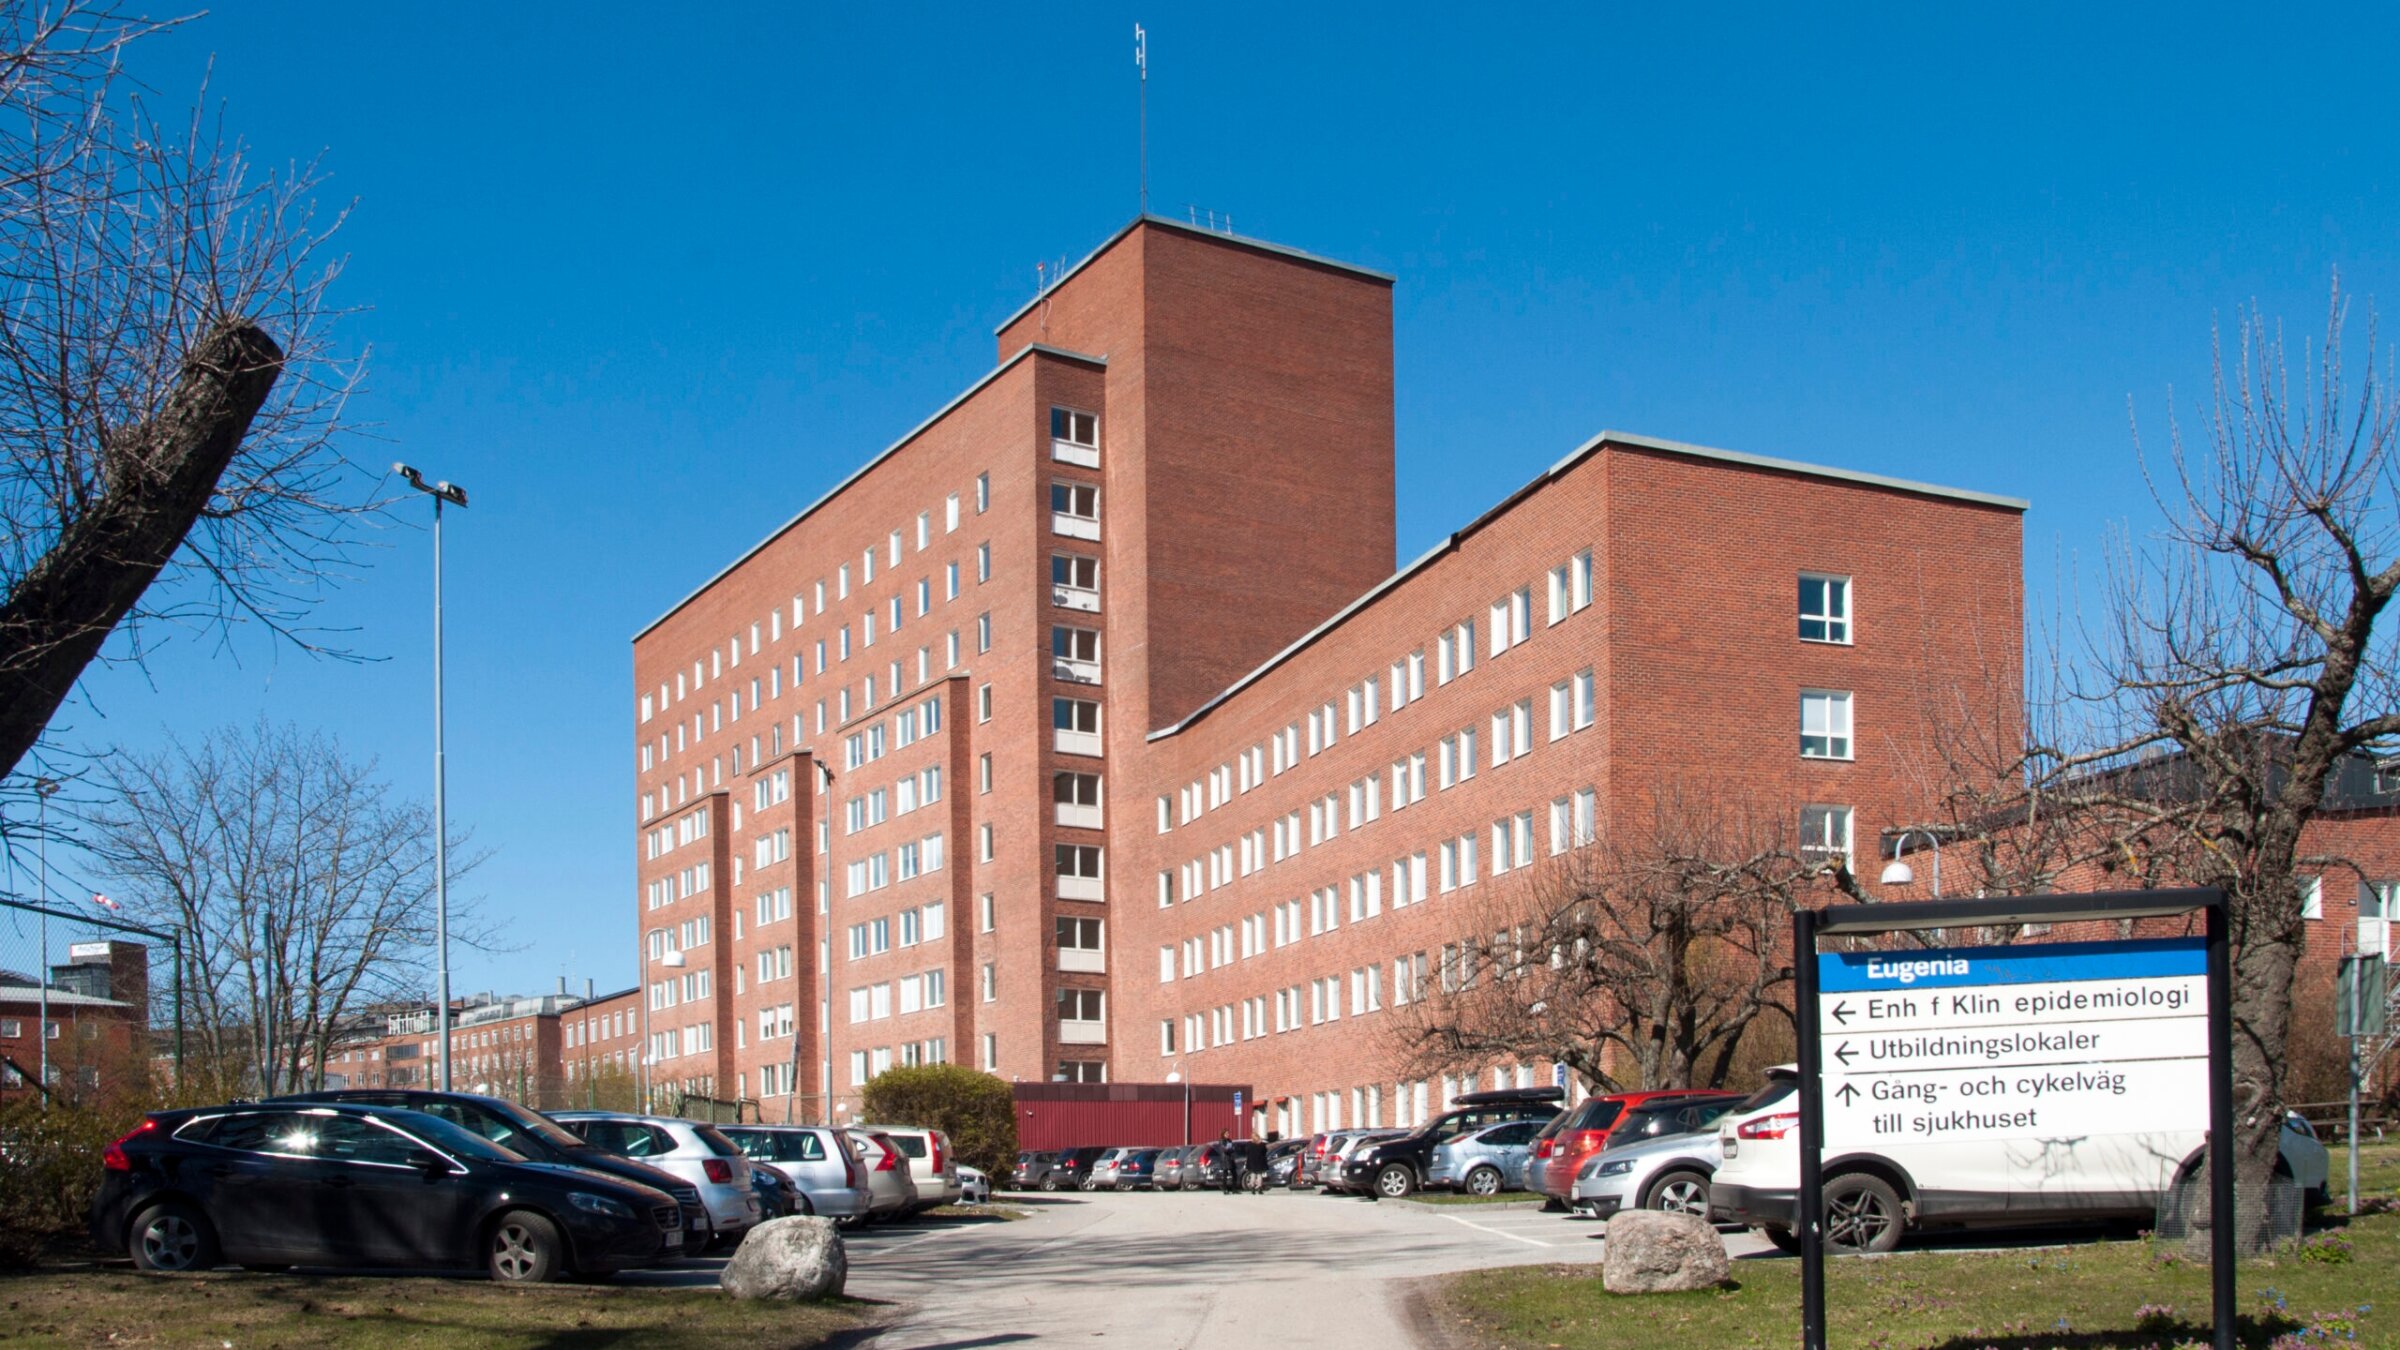 A view of Karolinska University Hospital in Sweden in 2017. (Wikimedia Commons)